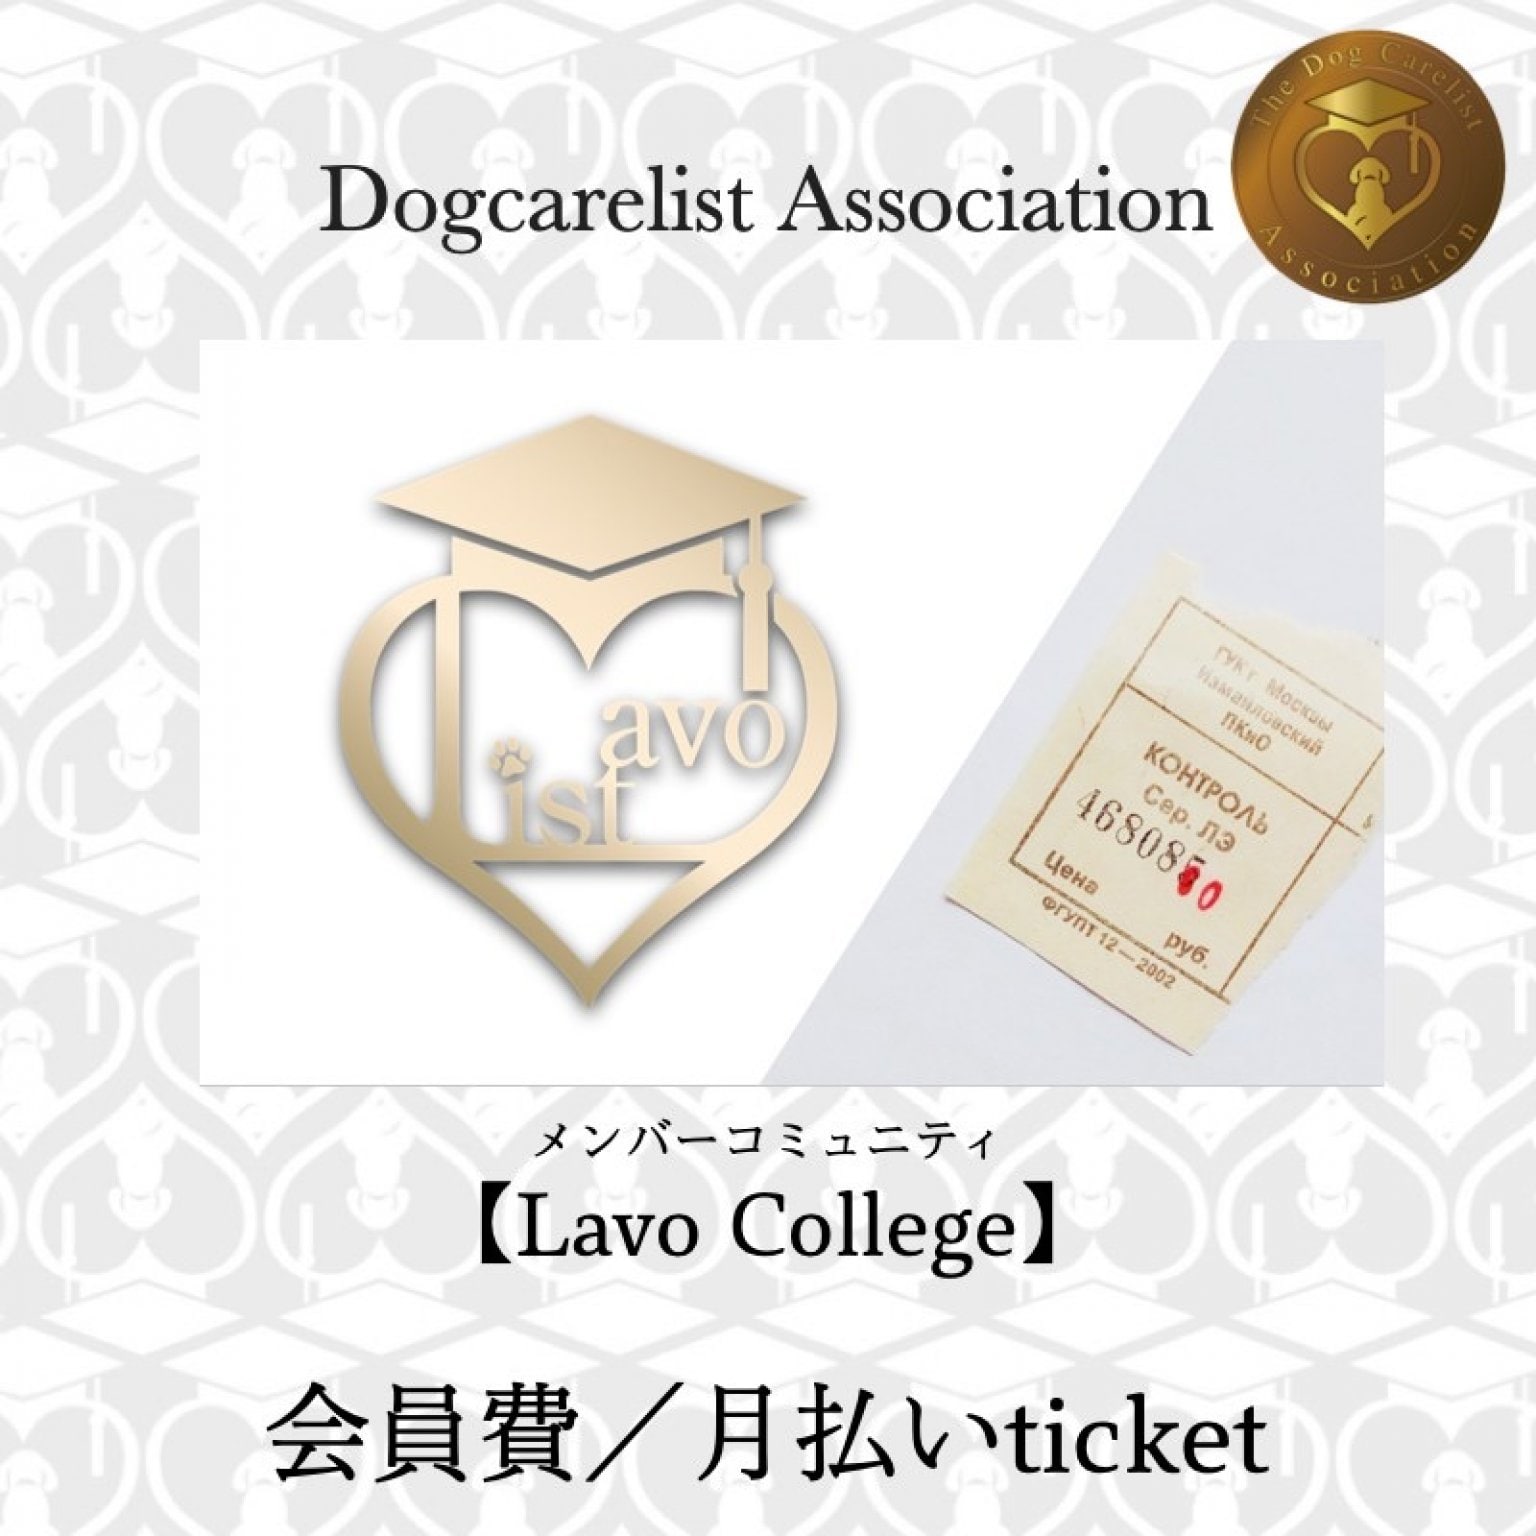 【Lavo College】ドッグケアリスト協会Lavolostメンバー会員費／月々払い